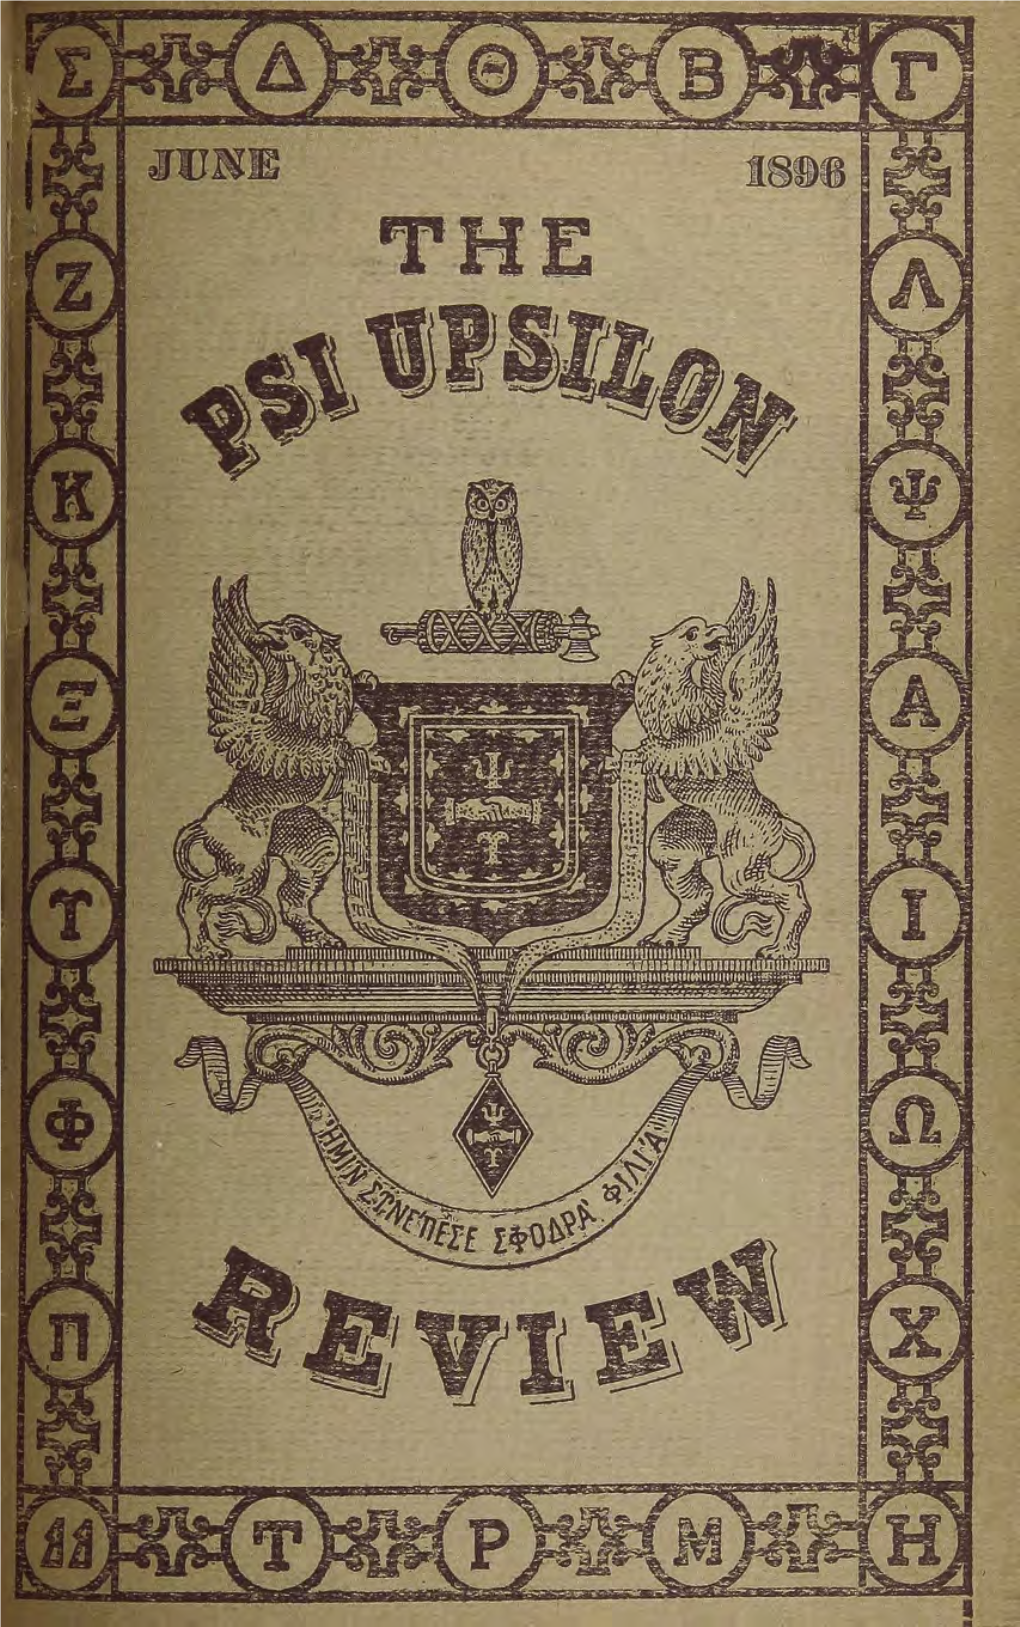 The Psi Upsilon Review Vol 1 June 1896